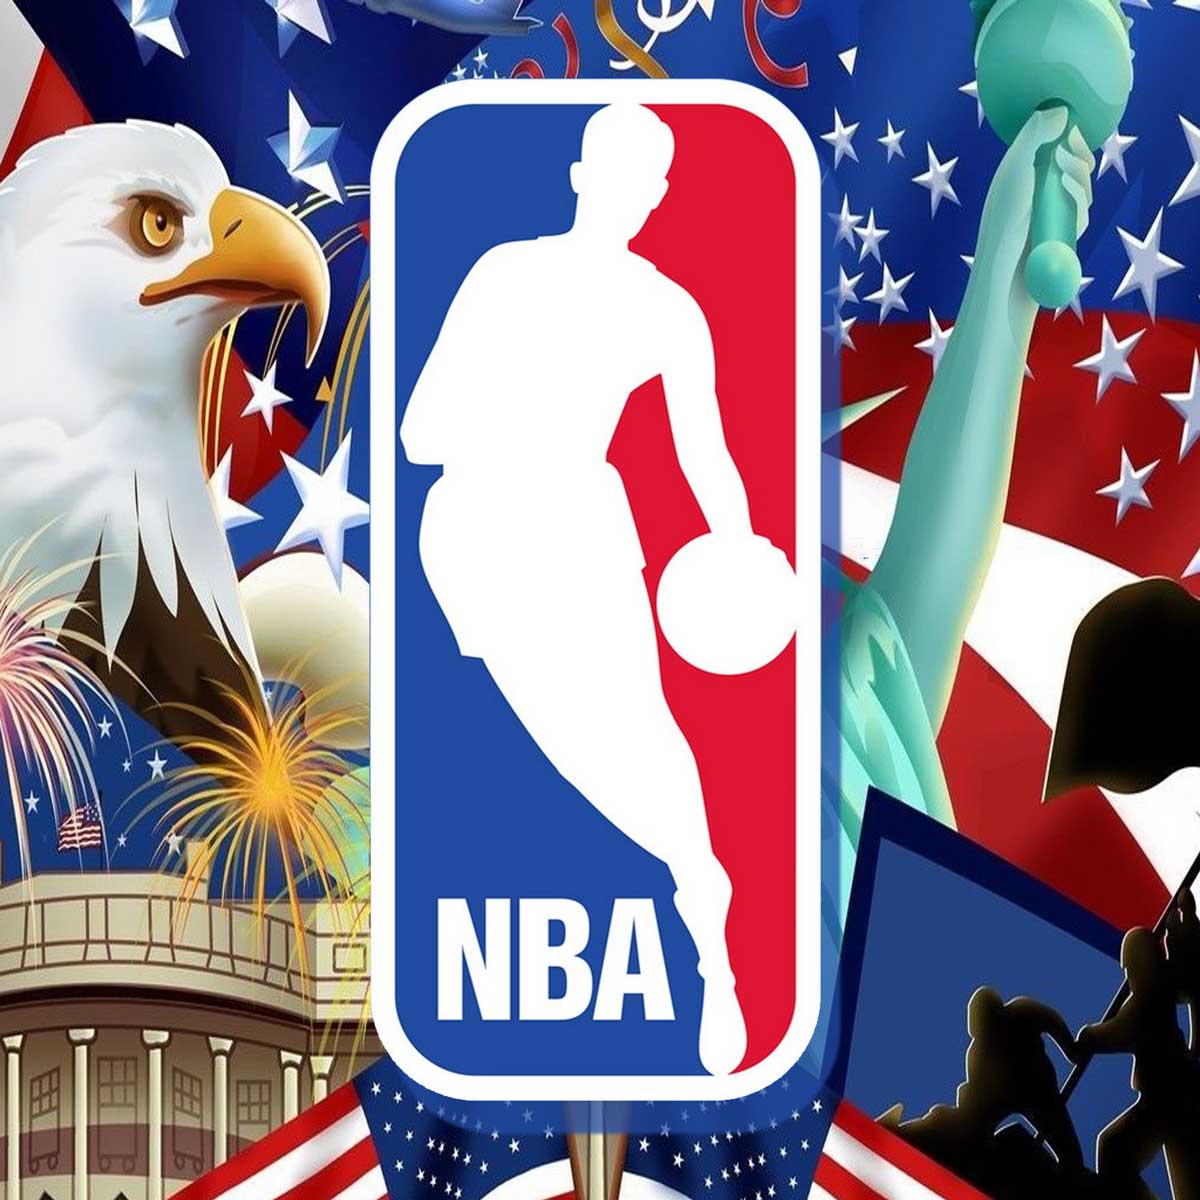 El logo de la NBA, su historia y detalles.